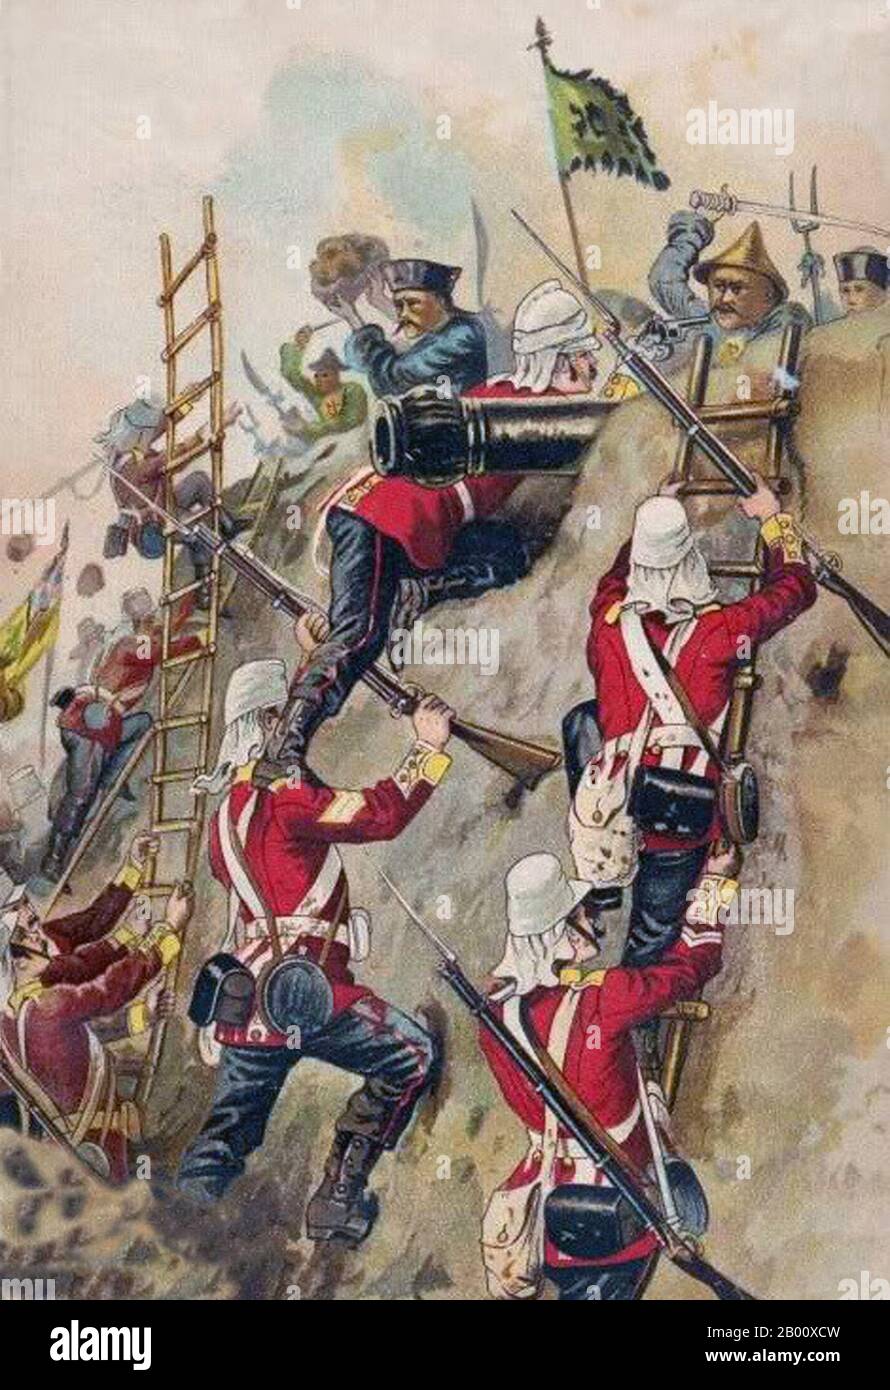 Chine/Royaume-Uni: La deuxième guerre de l'opium - les Britanniques 67e pied prenant un fort en 1860. Le 67e Régiment de foot (Hampshire du Sud) était un régiment d'infanterie de l'Armée britannique, formé en 1758 et fusionné dans le Hampshire Regiment en 1881. La deuxième guerre de l’opium, la deuxième guerre anglo-chinoise, la deuxième guerre de Chine, la guerre Arrow ou l’expédition anglo-française en Chine, fut une guerre opposant l’Empire britannique et le deuxième Empire français à la dynastie Qing de Chine, qui s’est tenue de 1856 à 1860. Banque D'Images